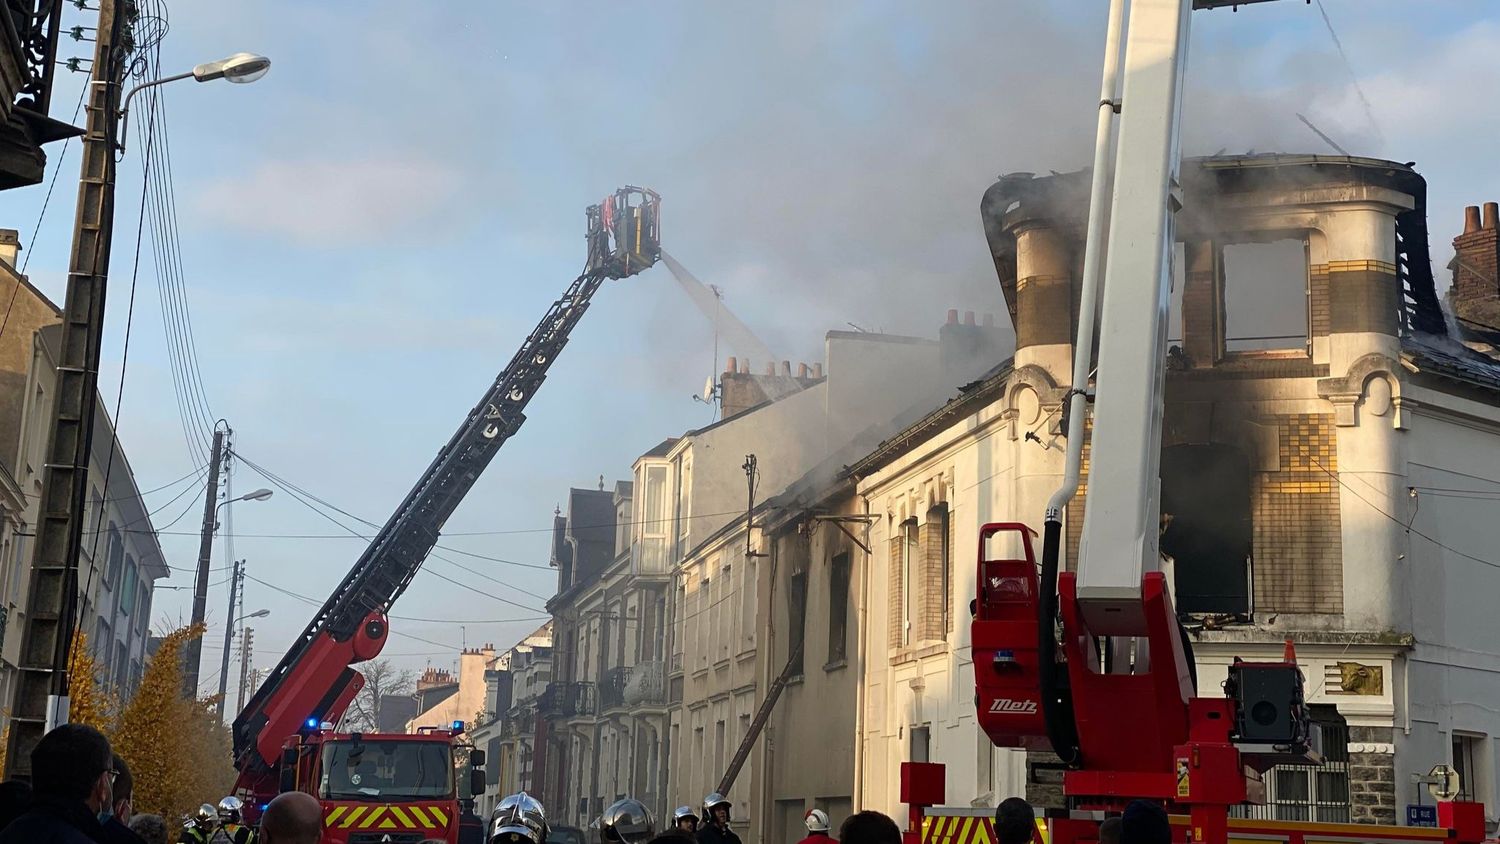 Incendie à Saint-Nazaire